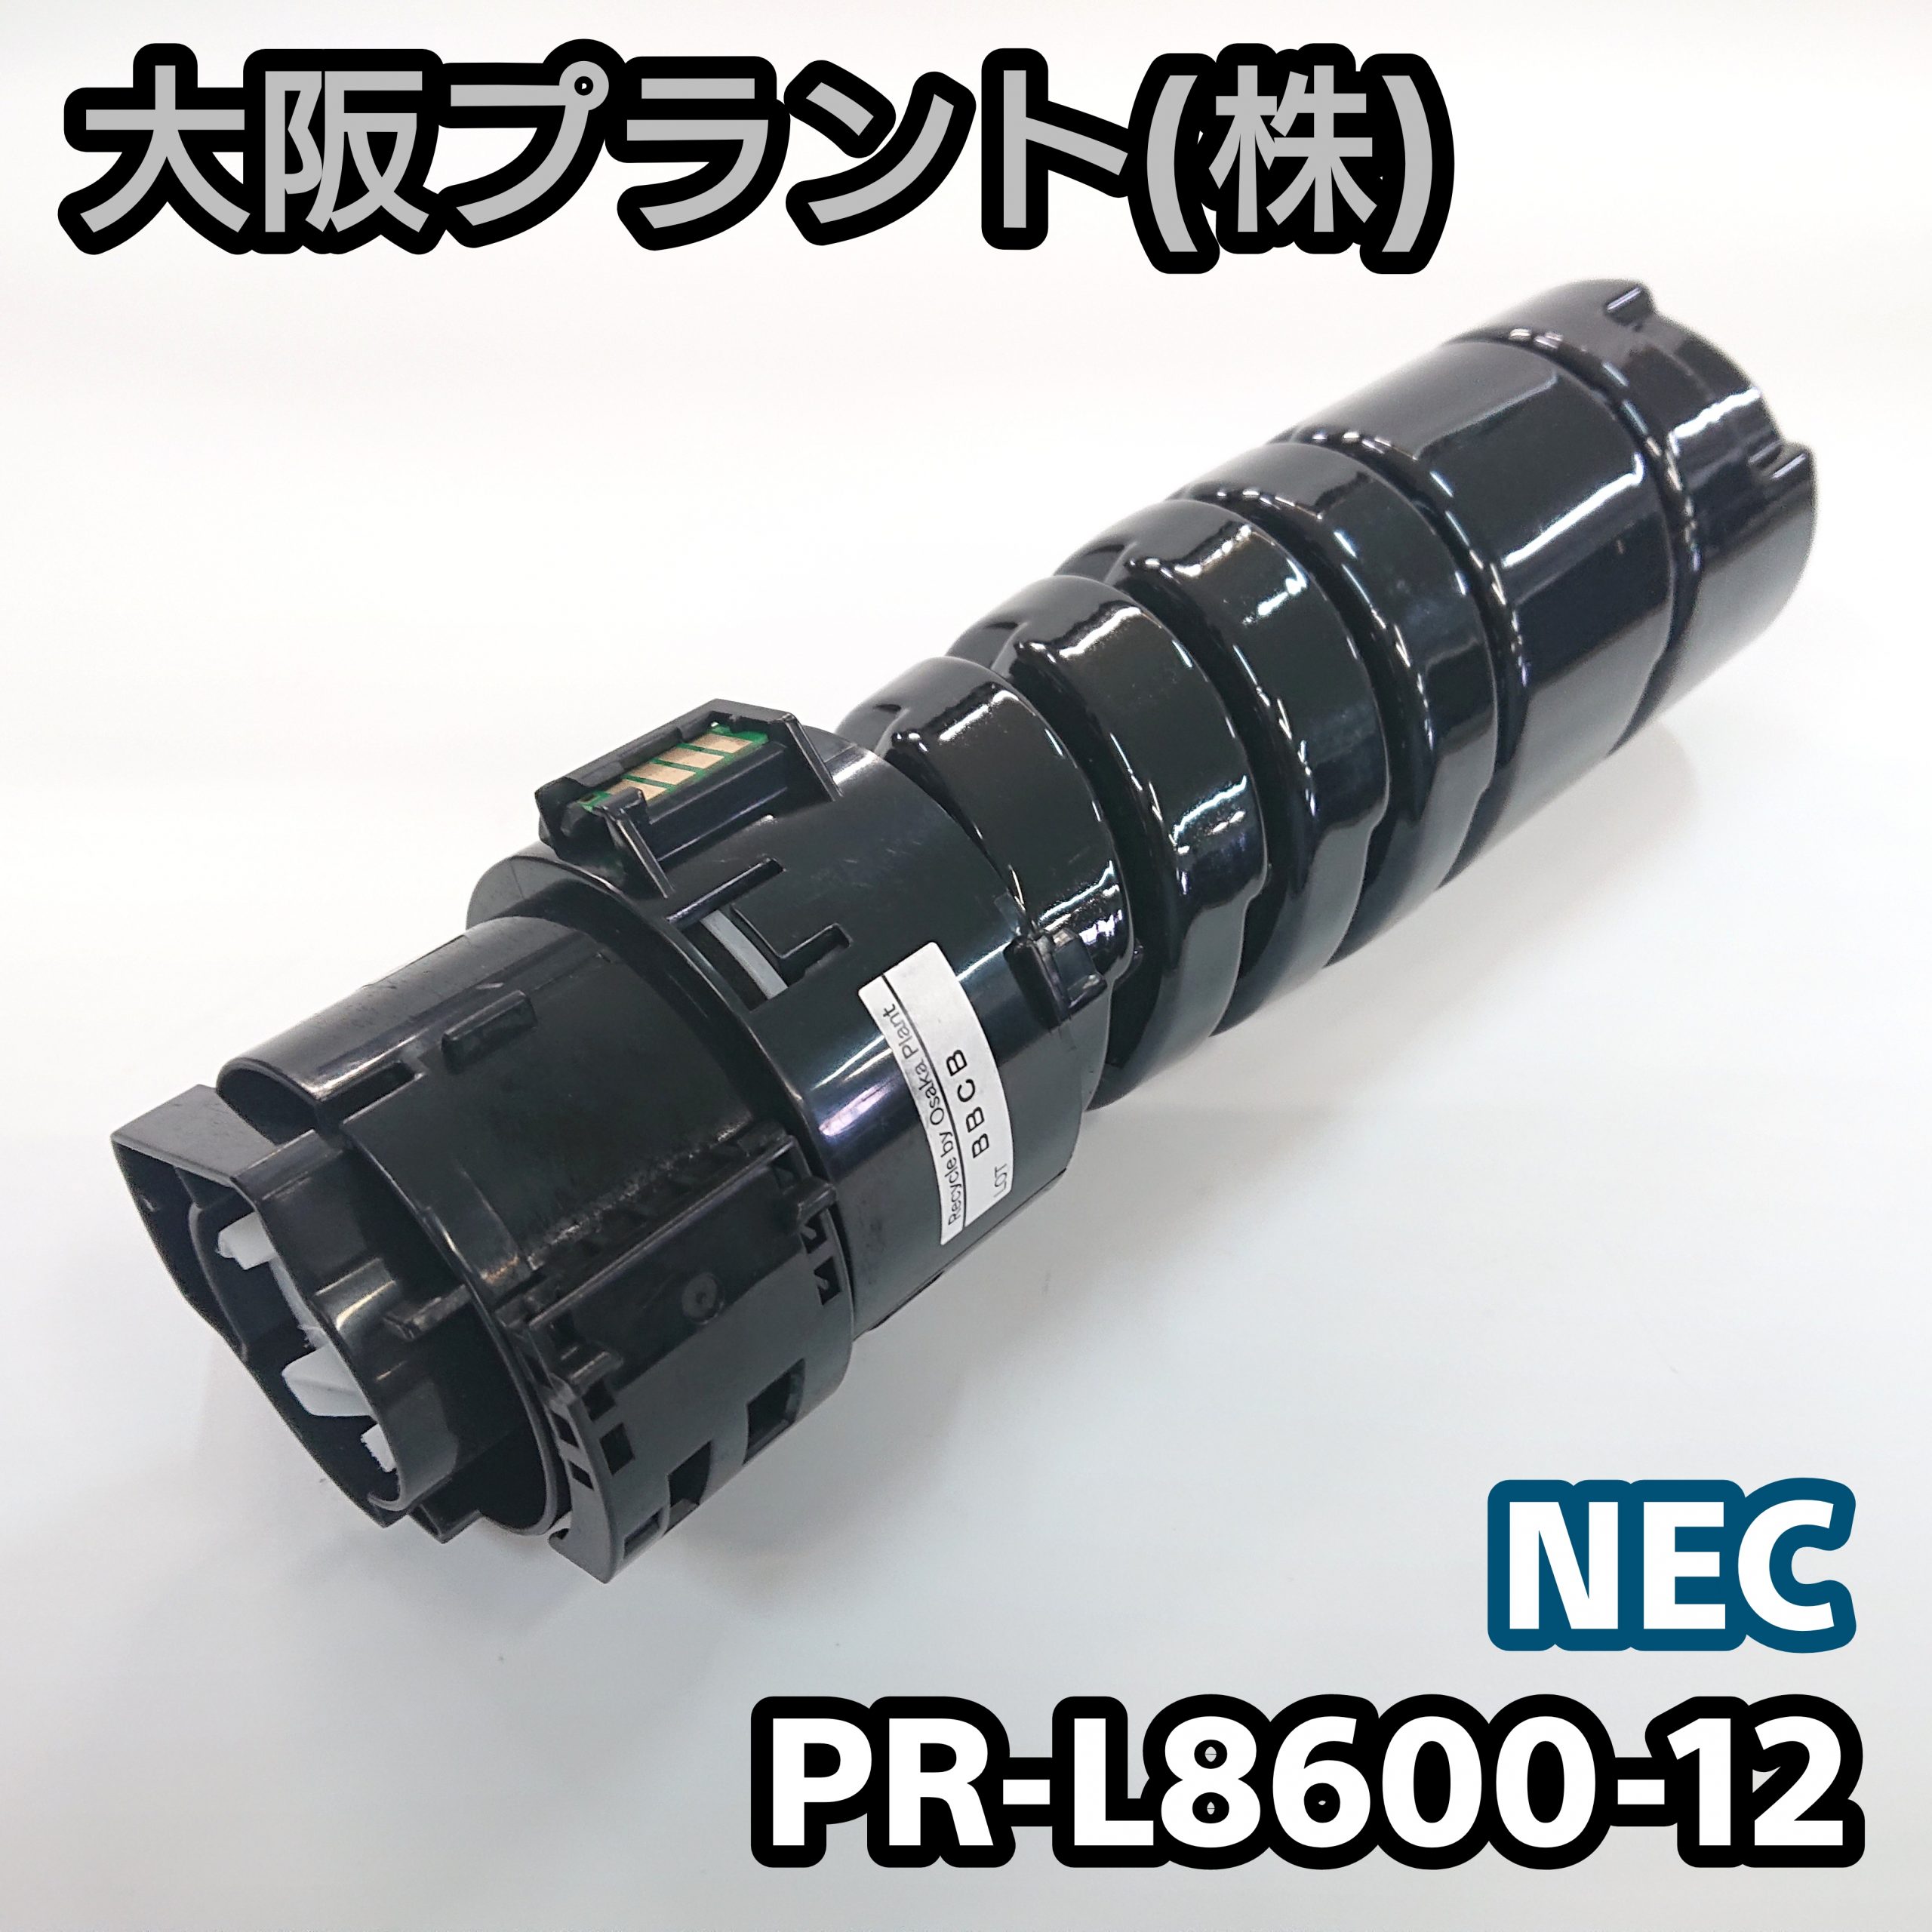 特別価格】再生 NEC PR-L8600-12 No.01-